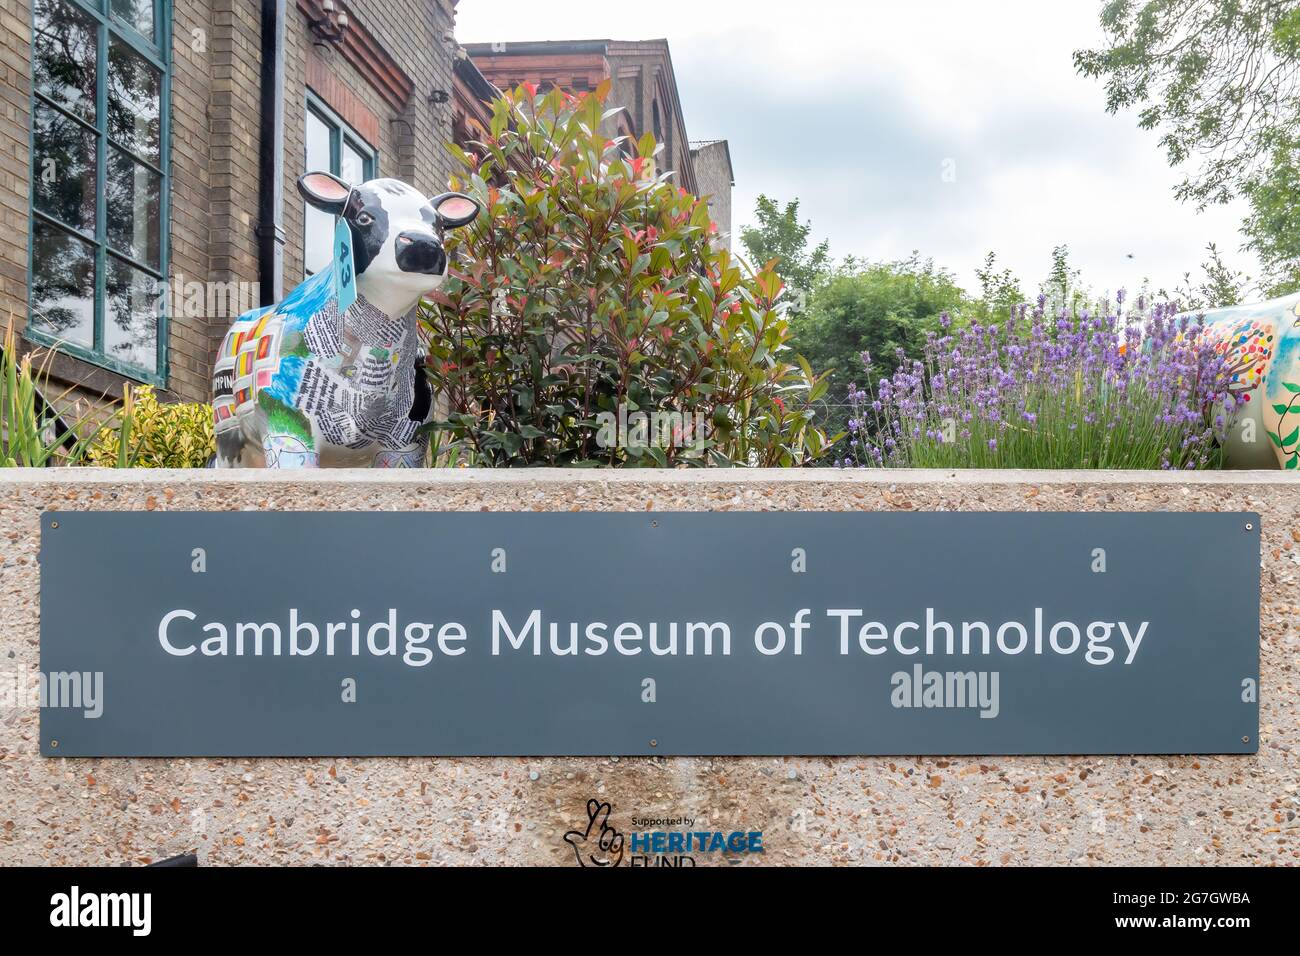 Una statua di mucca decorata, parte del progetto Cows About Cambridge, può essere trovata al Cambridge Museum of Technology. Foto Stock